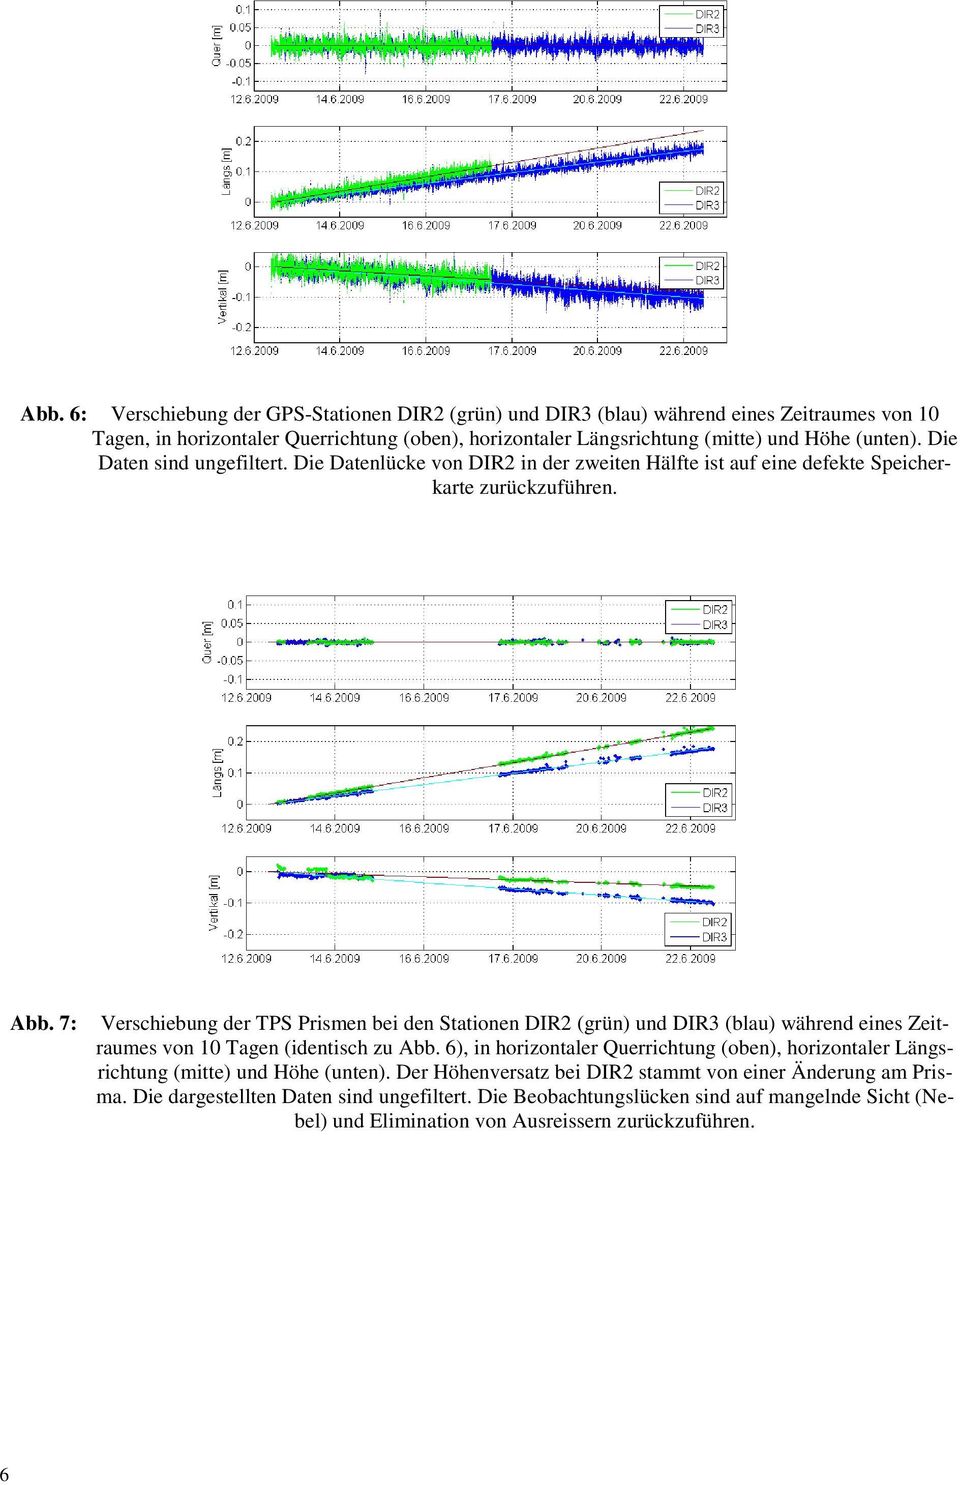 7: Verschiebung der TPS Prismen bei den Stationen DIR2 (grün) und DIR3 (blau) während eines Zeitraumes von 10 Tagen (identisch zu Abb.